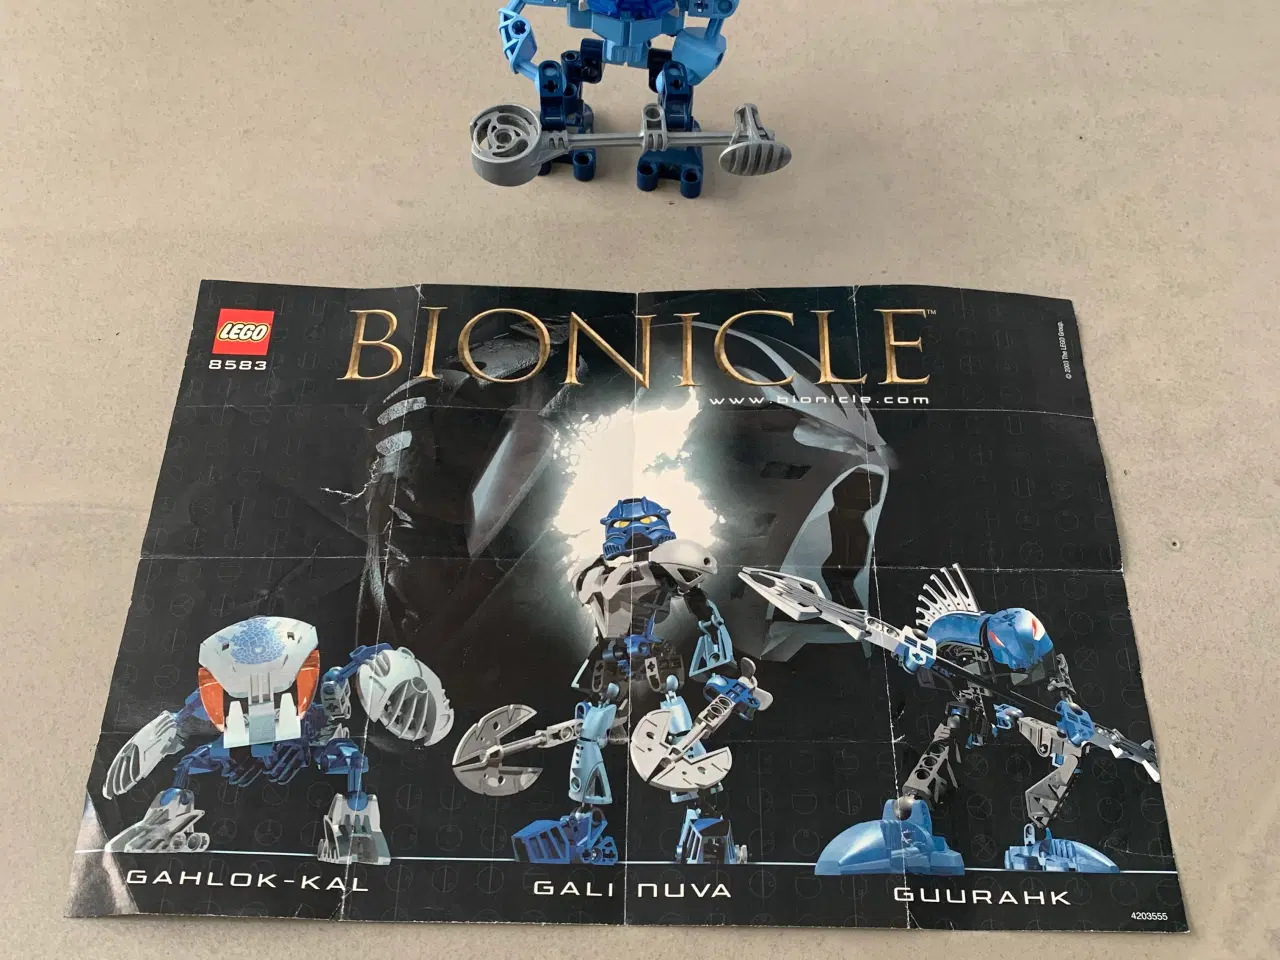 Billede 1 - Lego Bionicle 8583